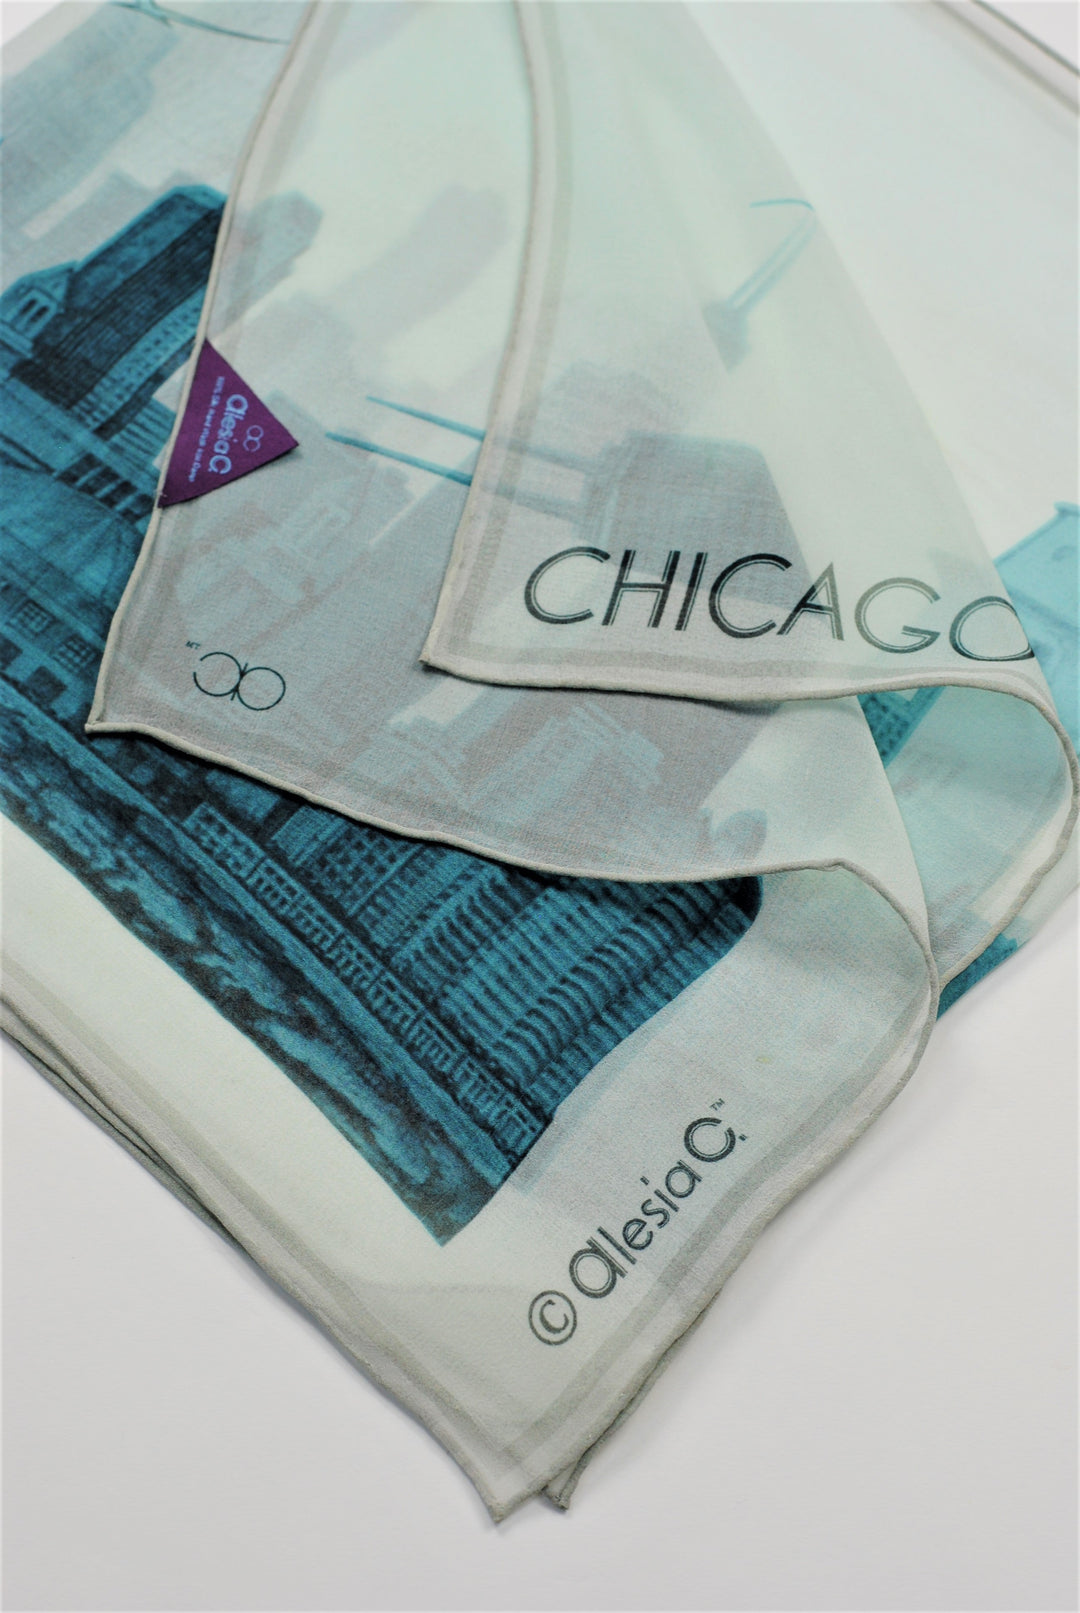 CHICAGO Skyline Art Pure Silk Georgette Scarf Blue White